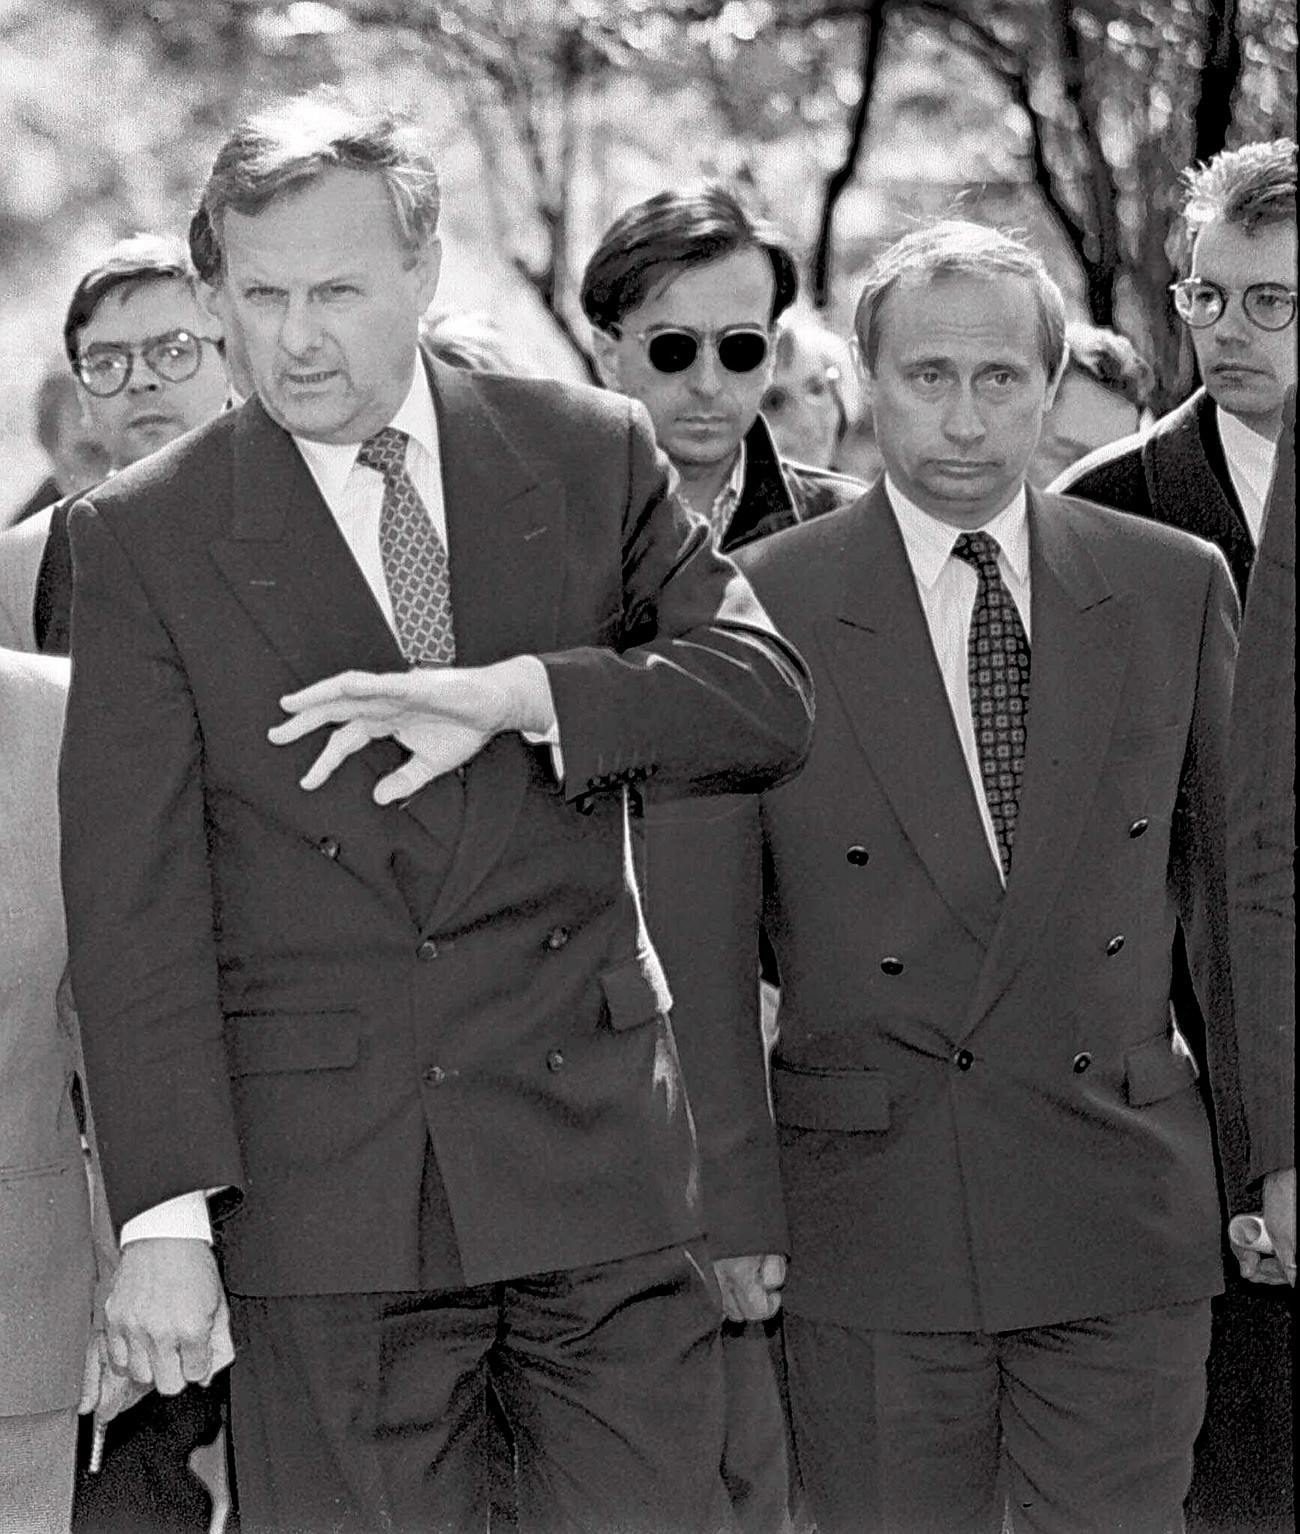 Putin saat mendampingi Walikota Sankt Peterburg Anatoly Sobchak (kiri), 1994.